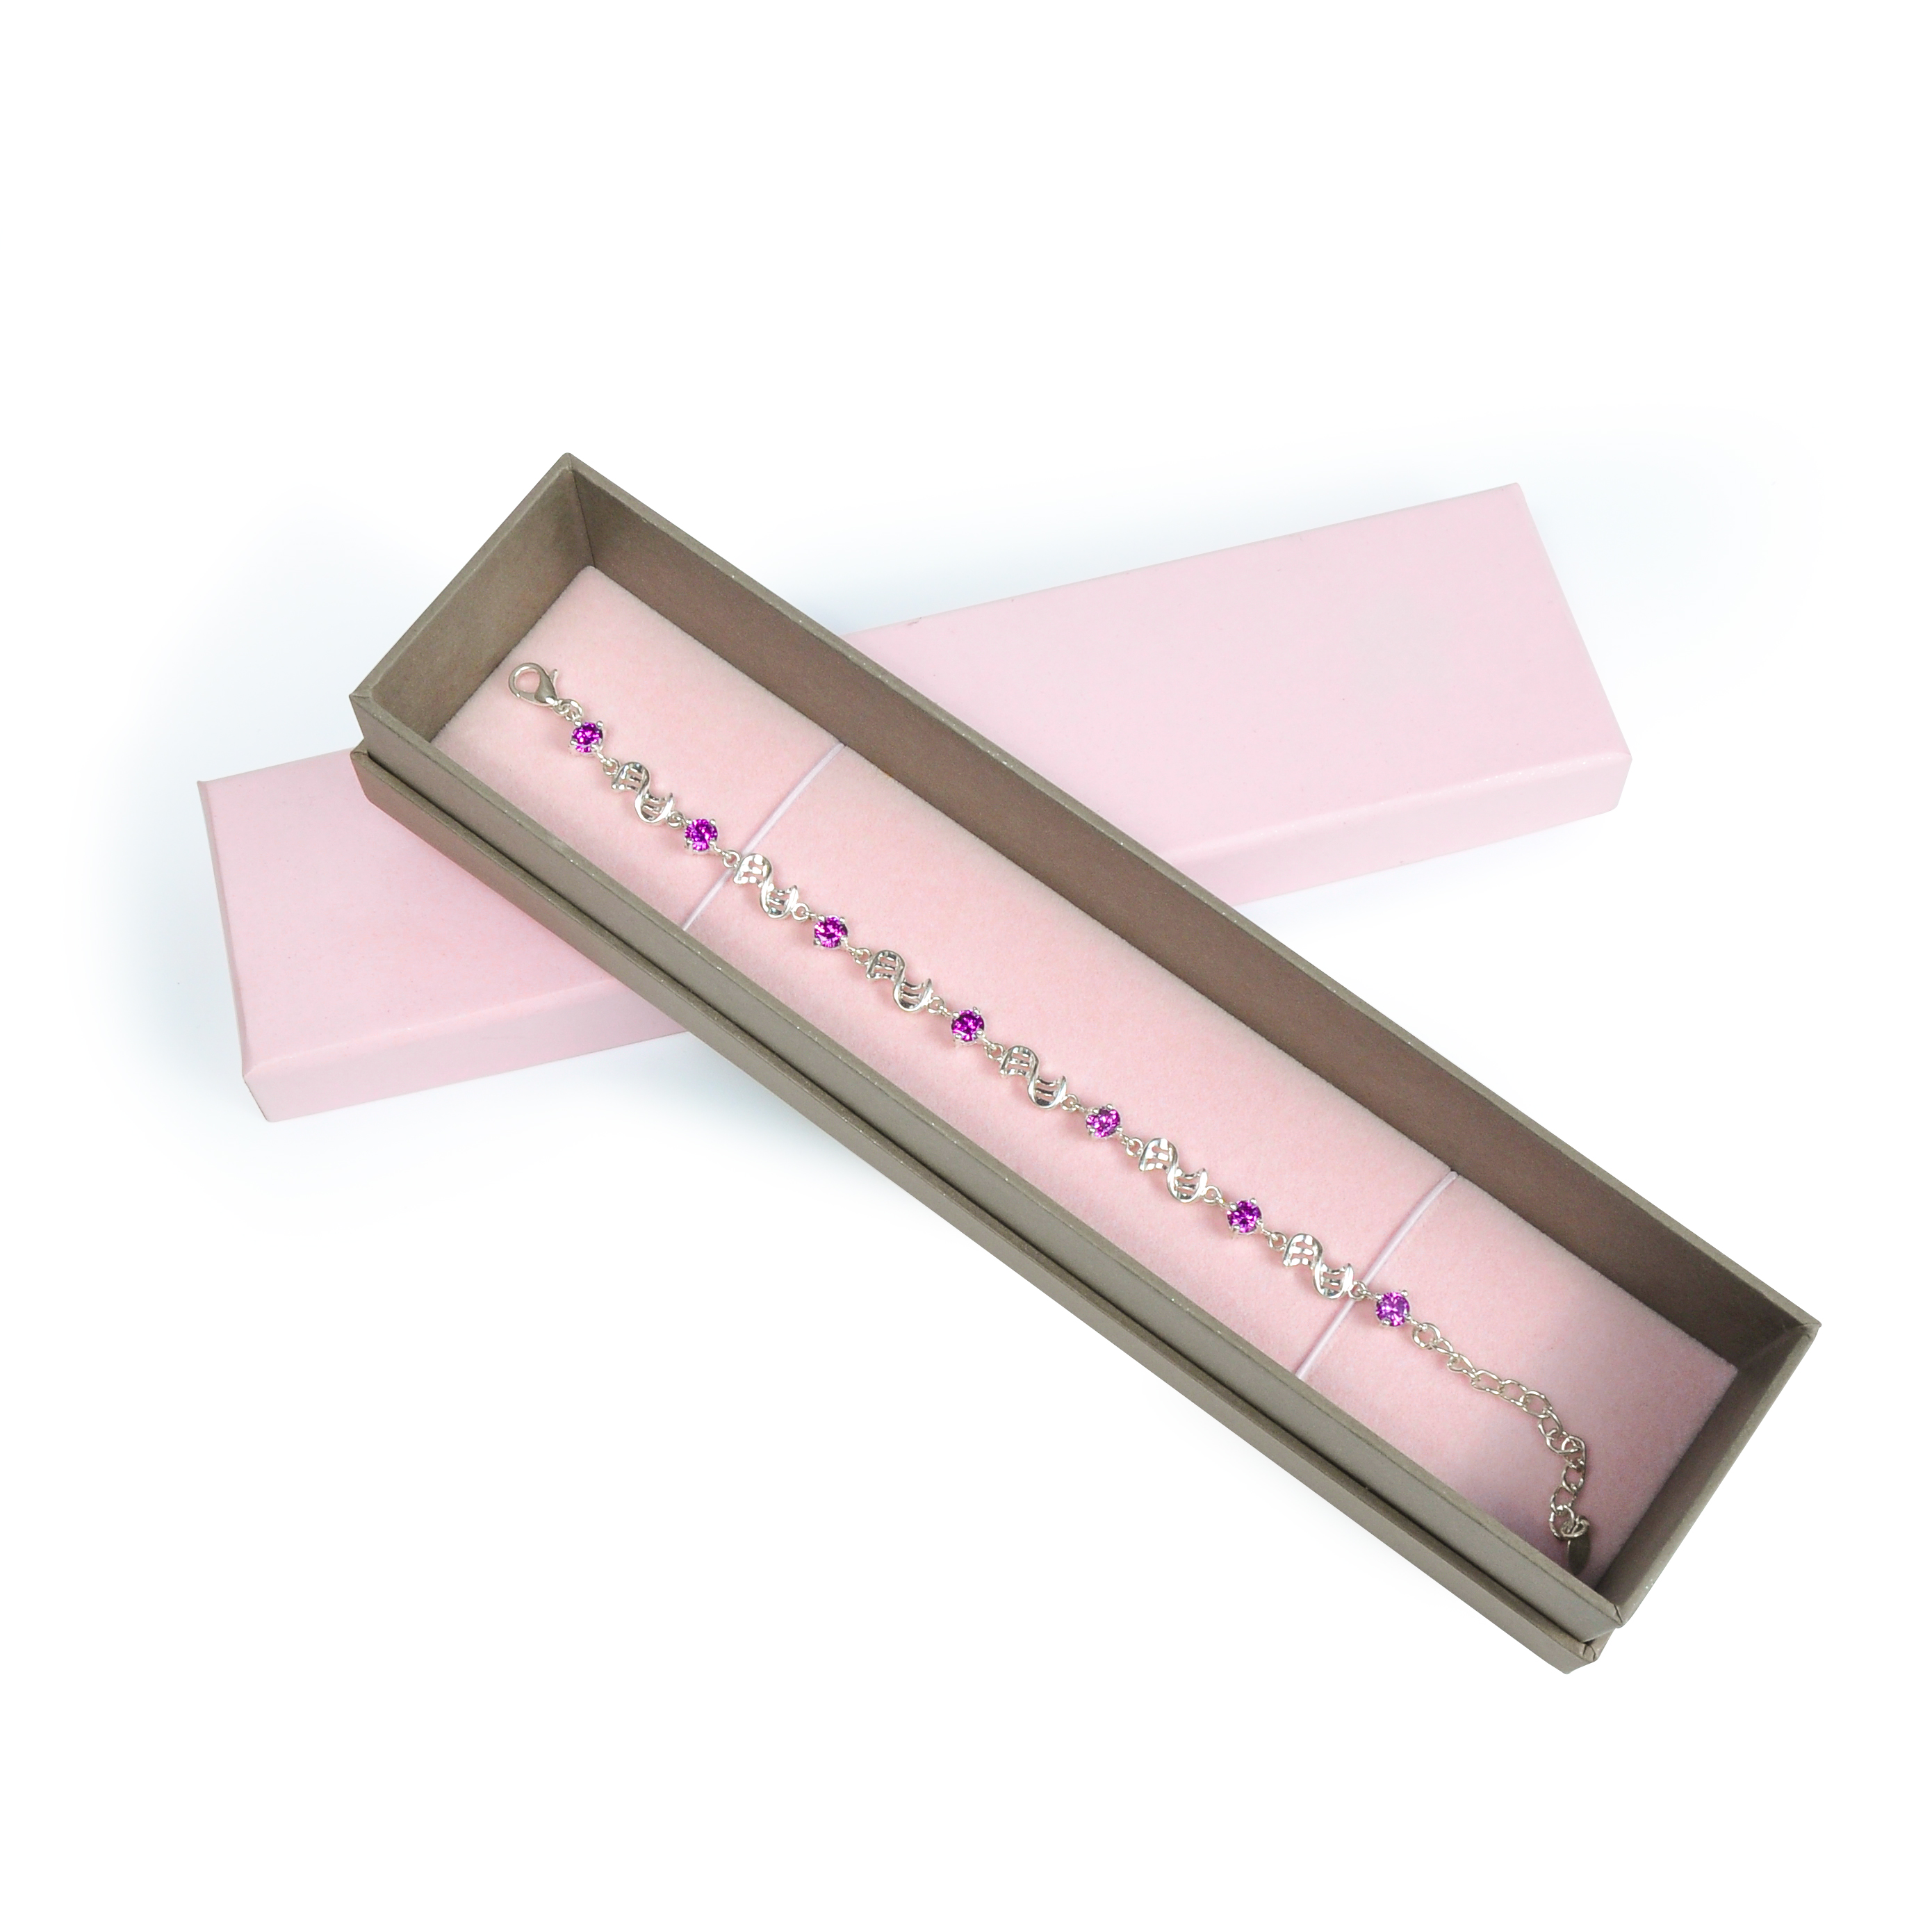 สร้อยข้อมือสีชมพูกล่องเครื่องประดับกระดาษแข็งบรรจุภัณฑ์กล่องกระดาษที่มีโลโก้สำหรับเด็กผู้หญิง